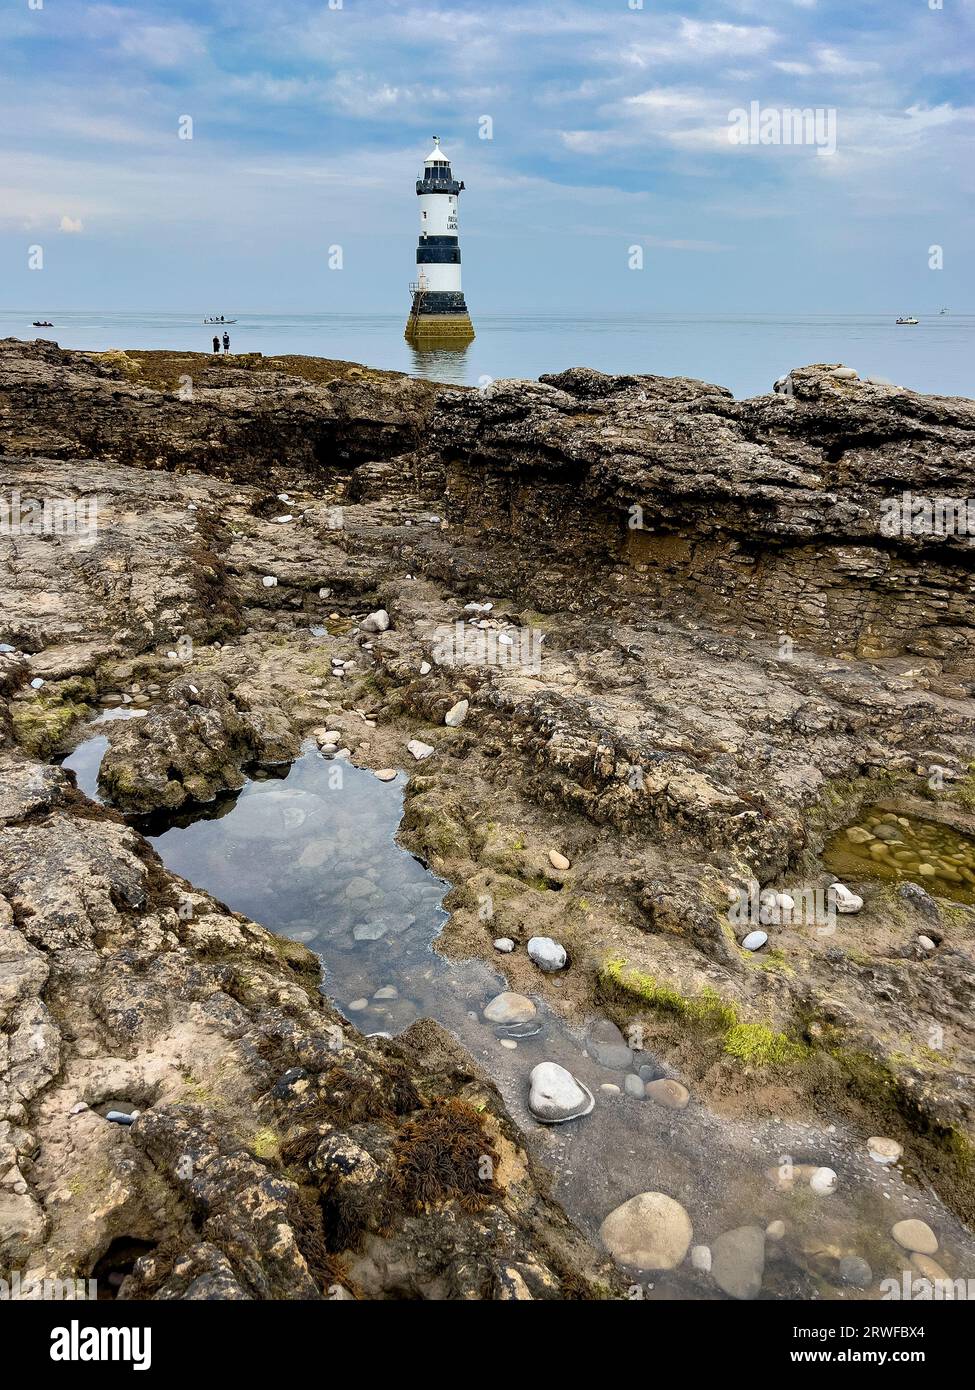 Phare de Penmon sur l'île d'Anglesey sur la côte nord du pays de Galles. Banque D'Images